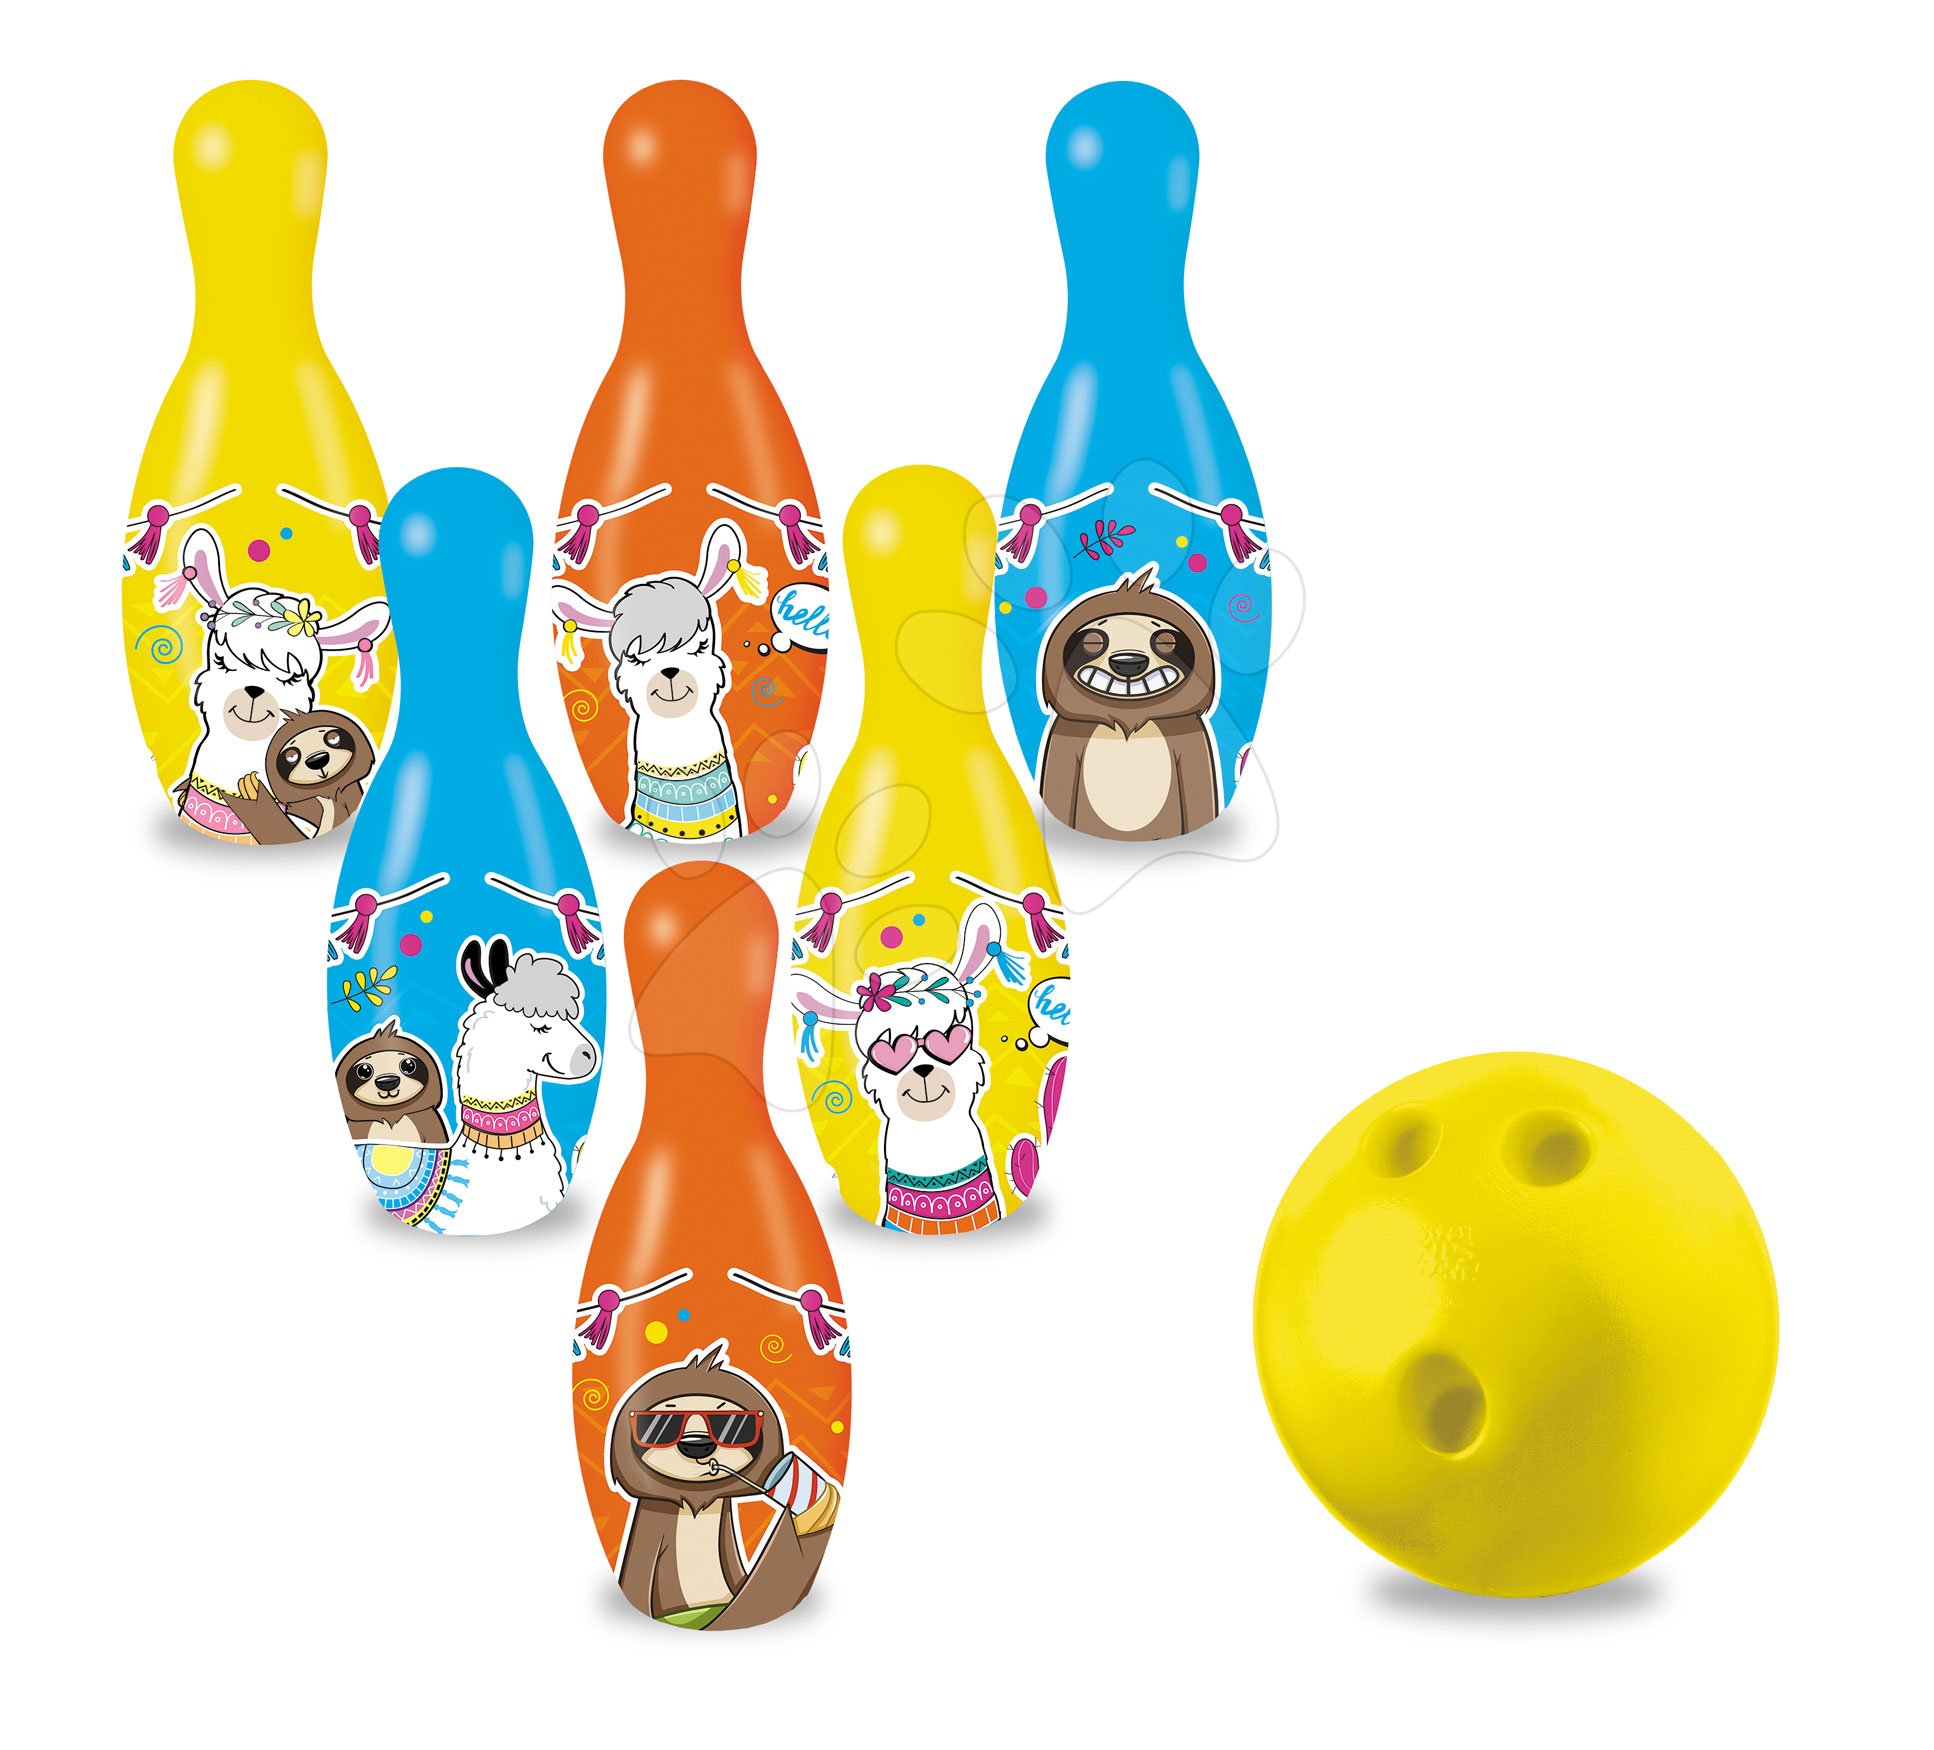 Kolky rozprávkové Llama a priatelia Skittles Mondo 6 figúr (20 cm vysoké)